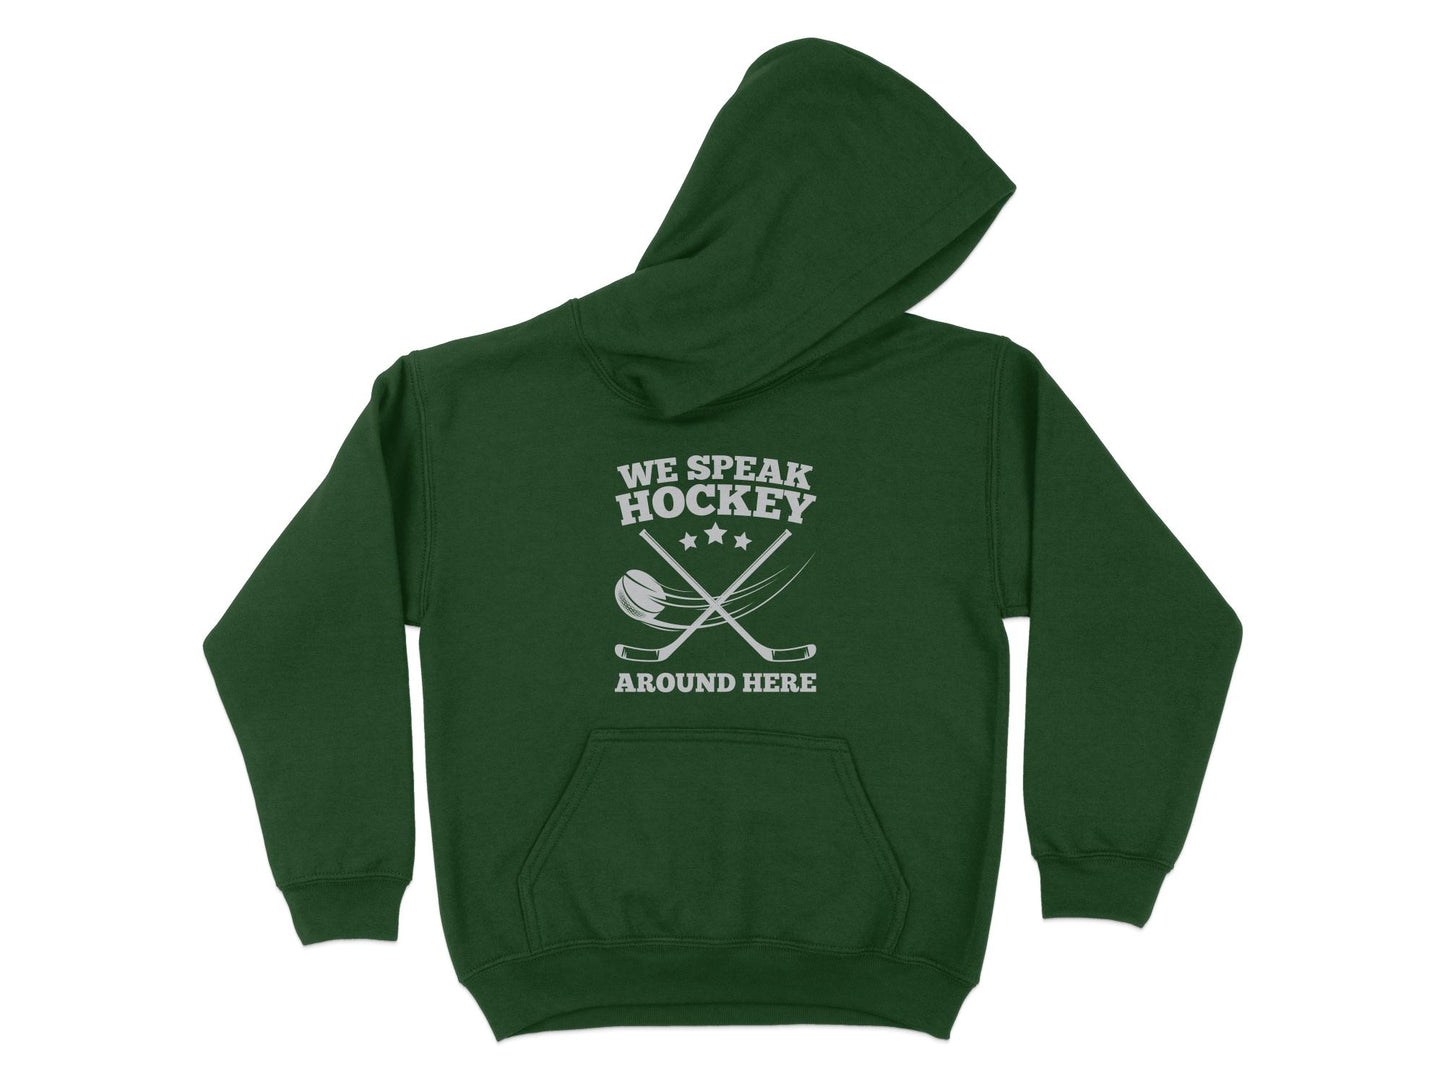 Funny Hockey Hoodie - We Speak Hockey Around Here, green